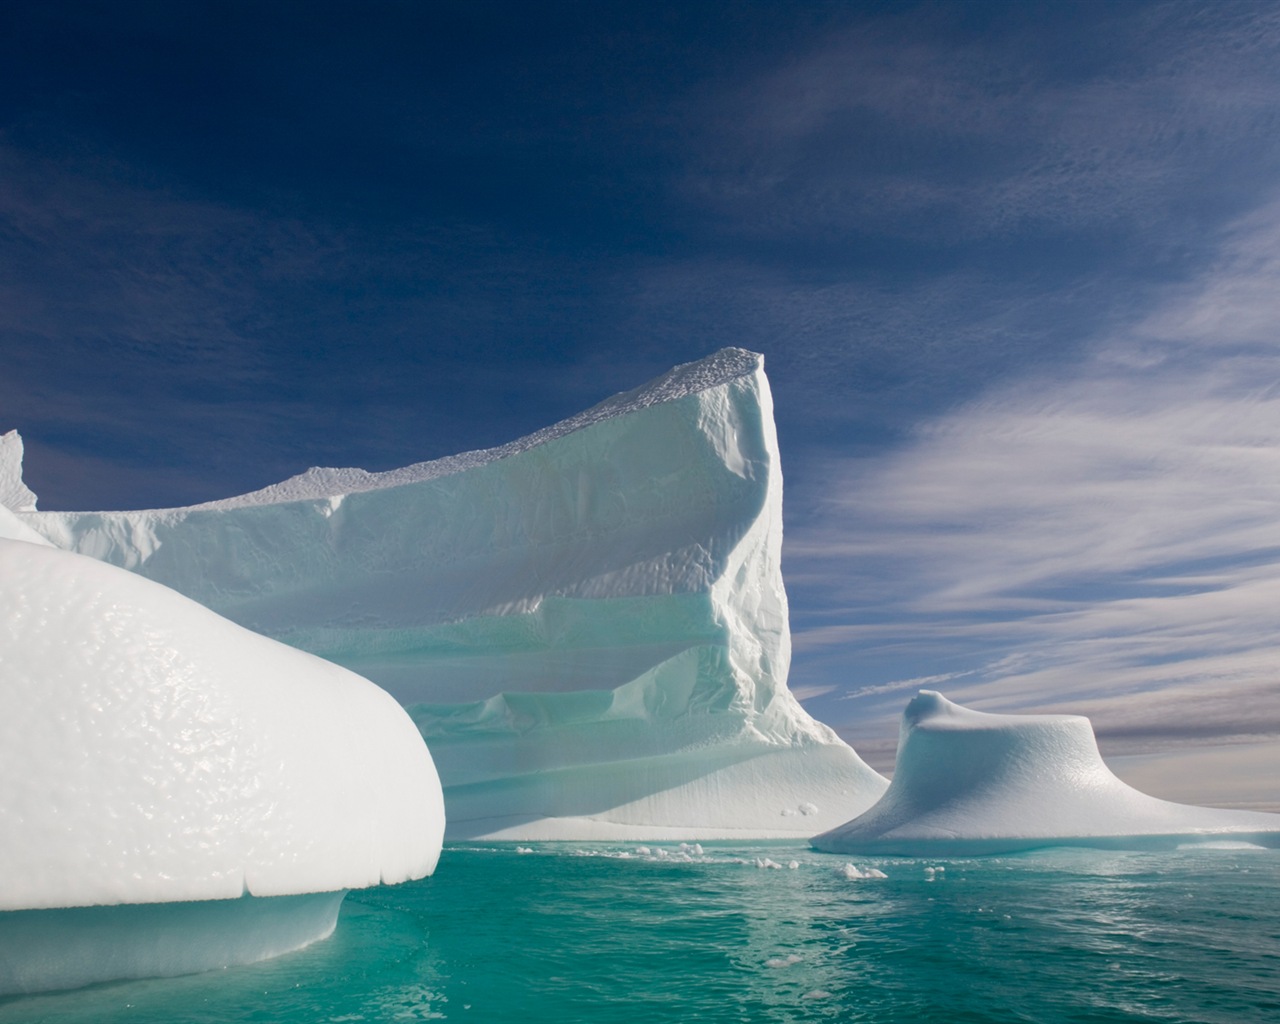 Windows 8: Fondos del Ártico, el paisaje ecológico, ártico animales #14 - 1280x1024